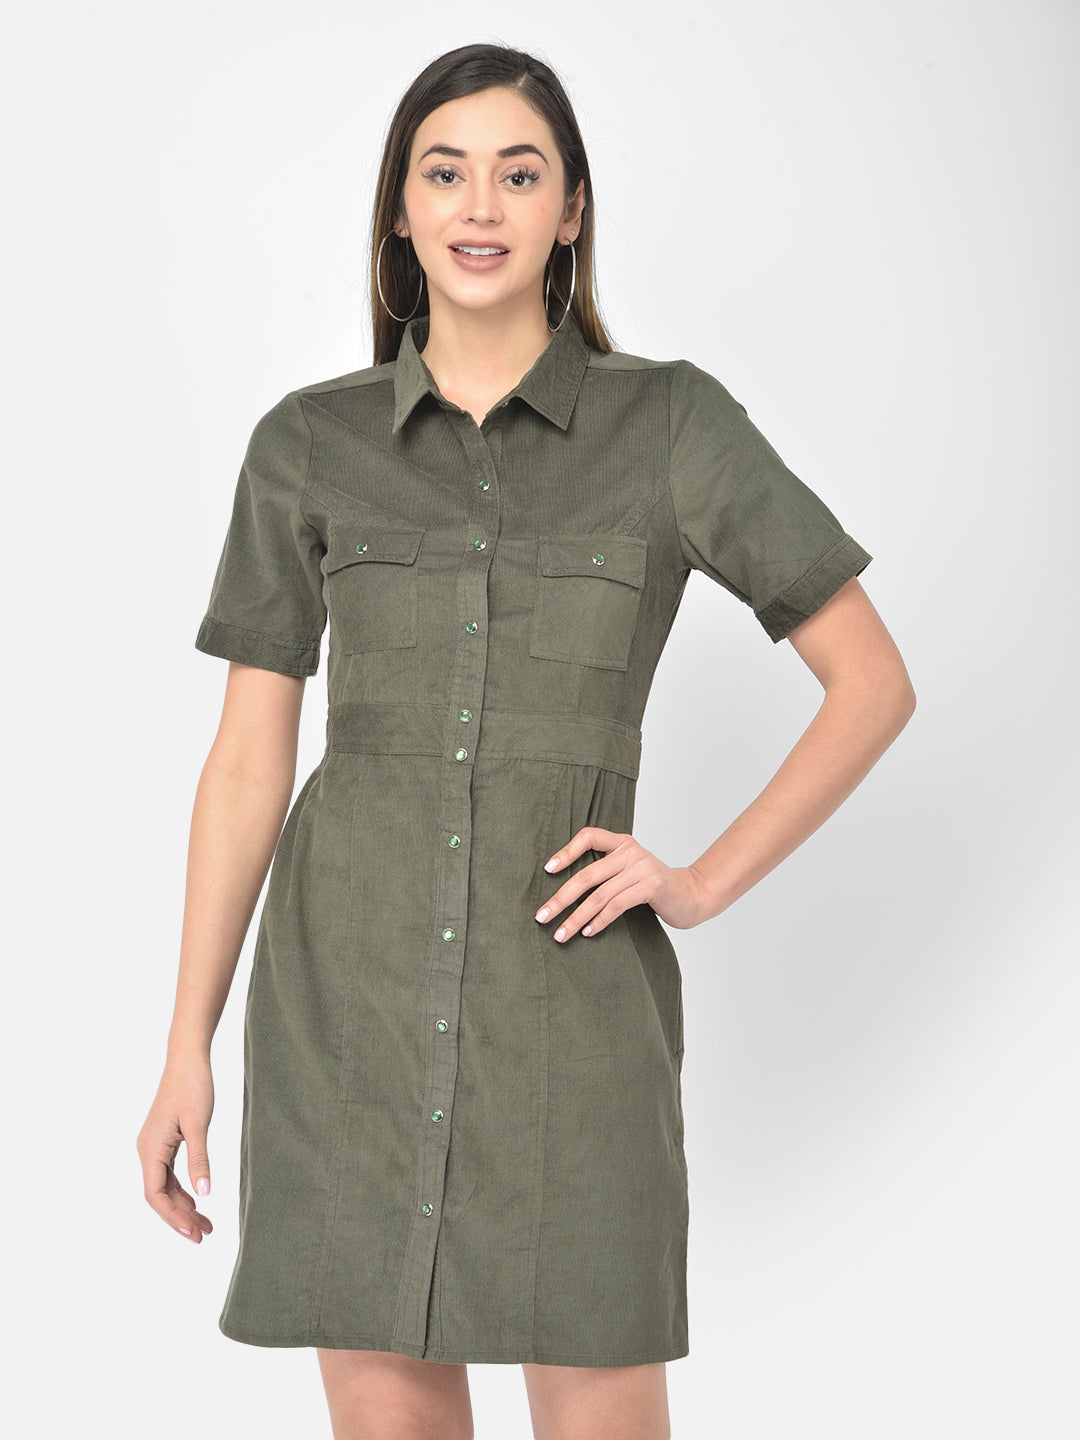 Green Corduroy HalfSleeve Shirt Dress